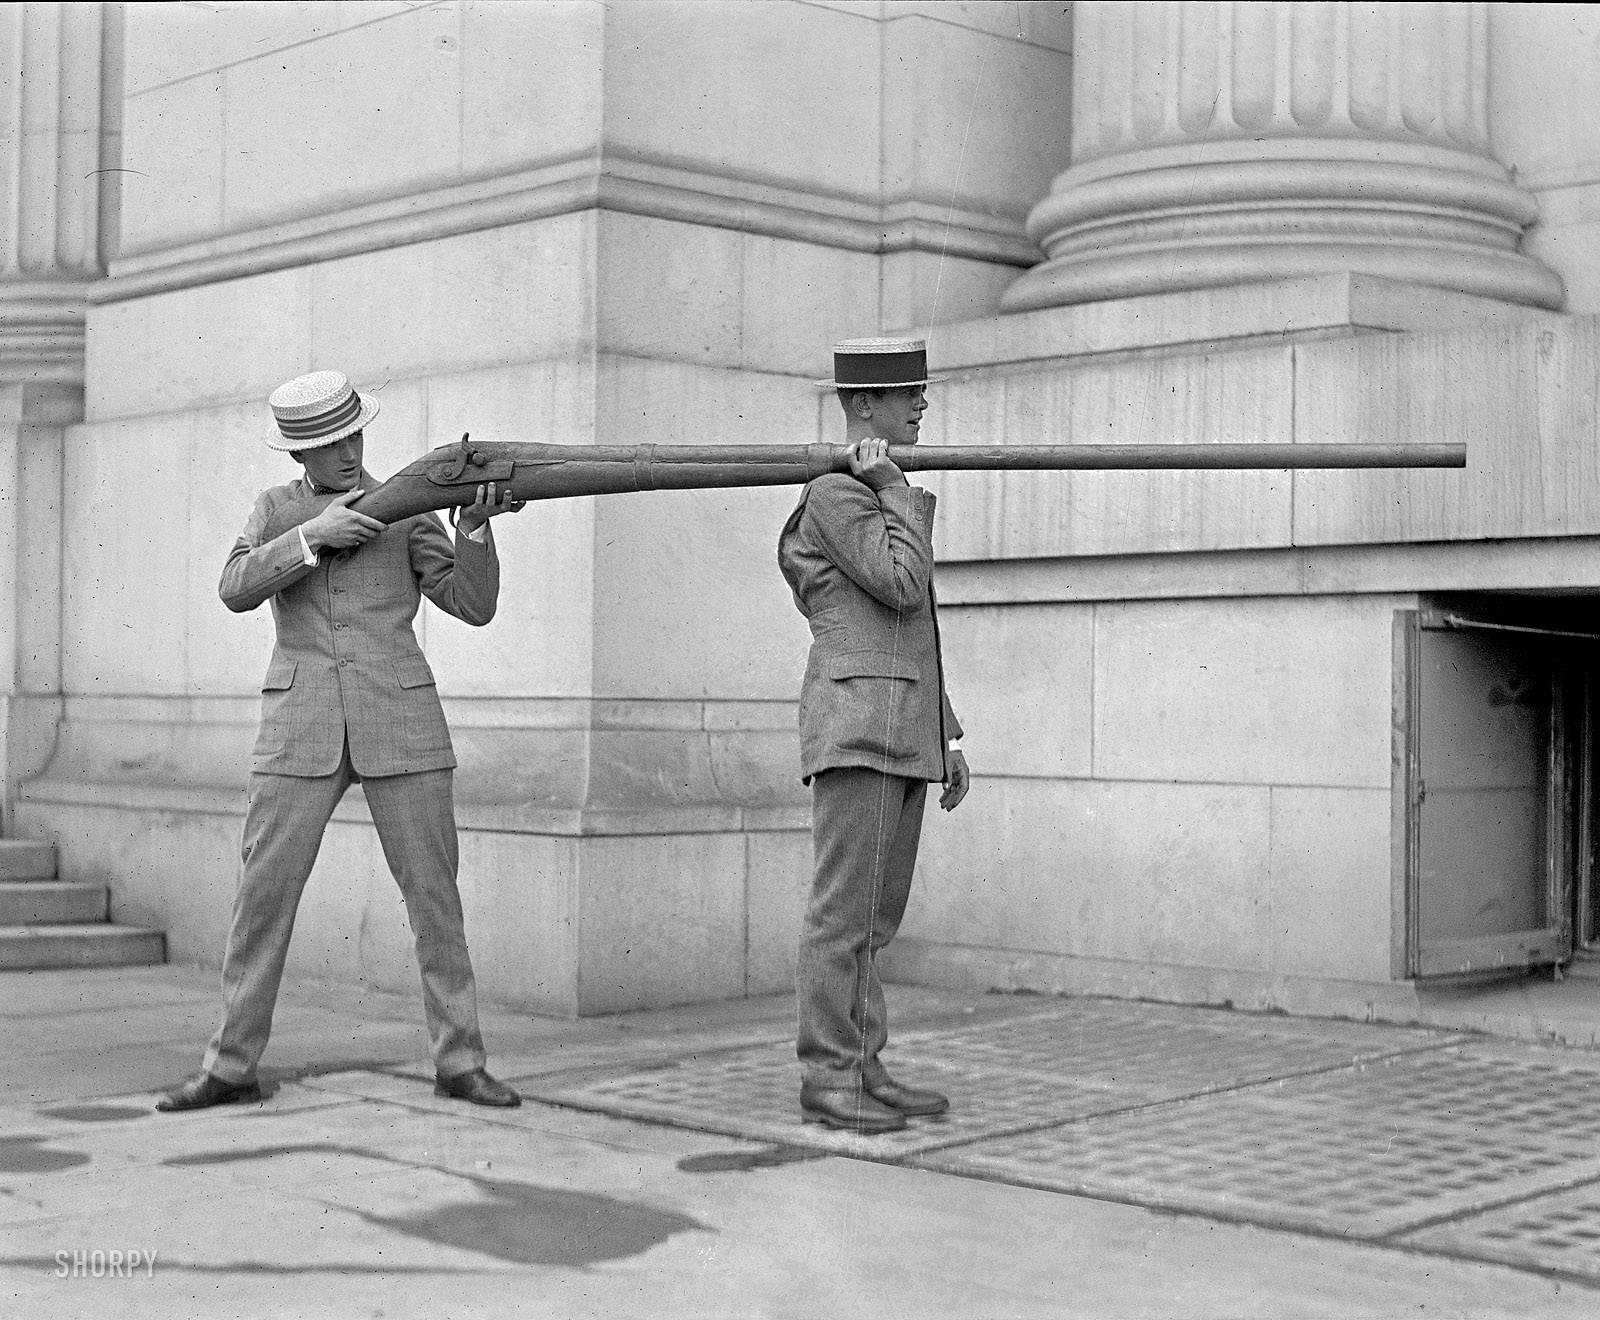 уточница утятница гусятница пантган punt gun самое большое ружье в мире самый большой дробовик гигантское оружие история охота отвратительные мужики disgusting men